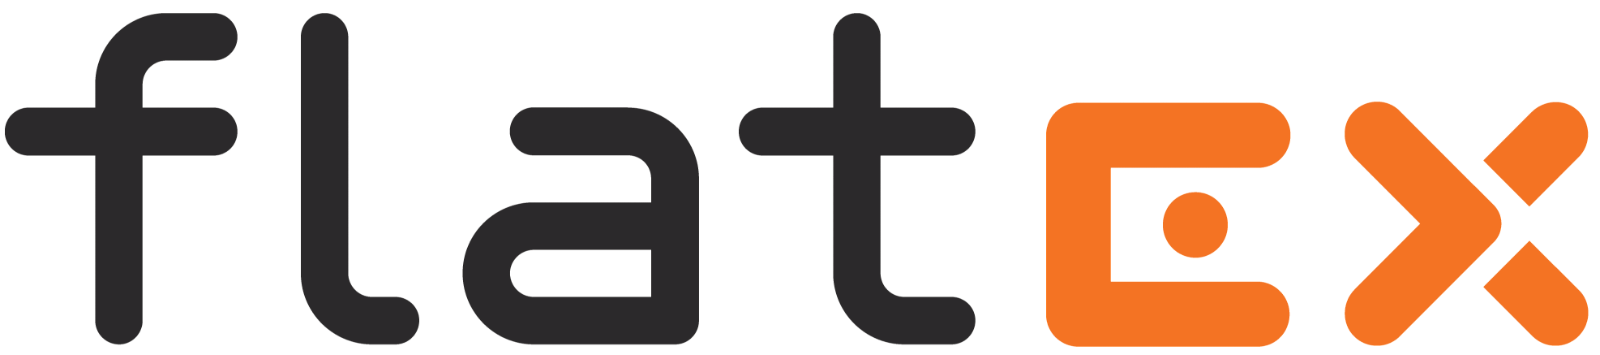 Logo Flatex